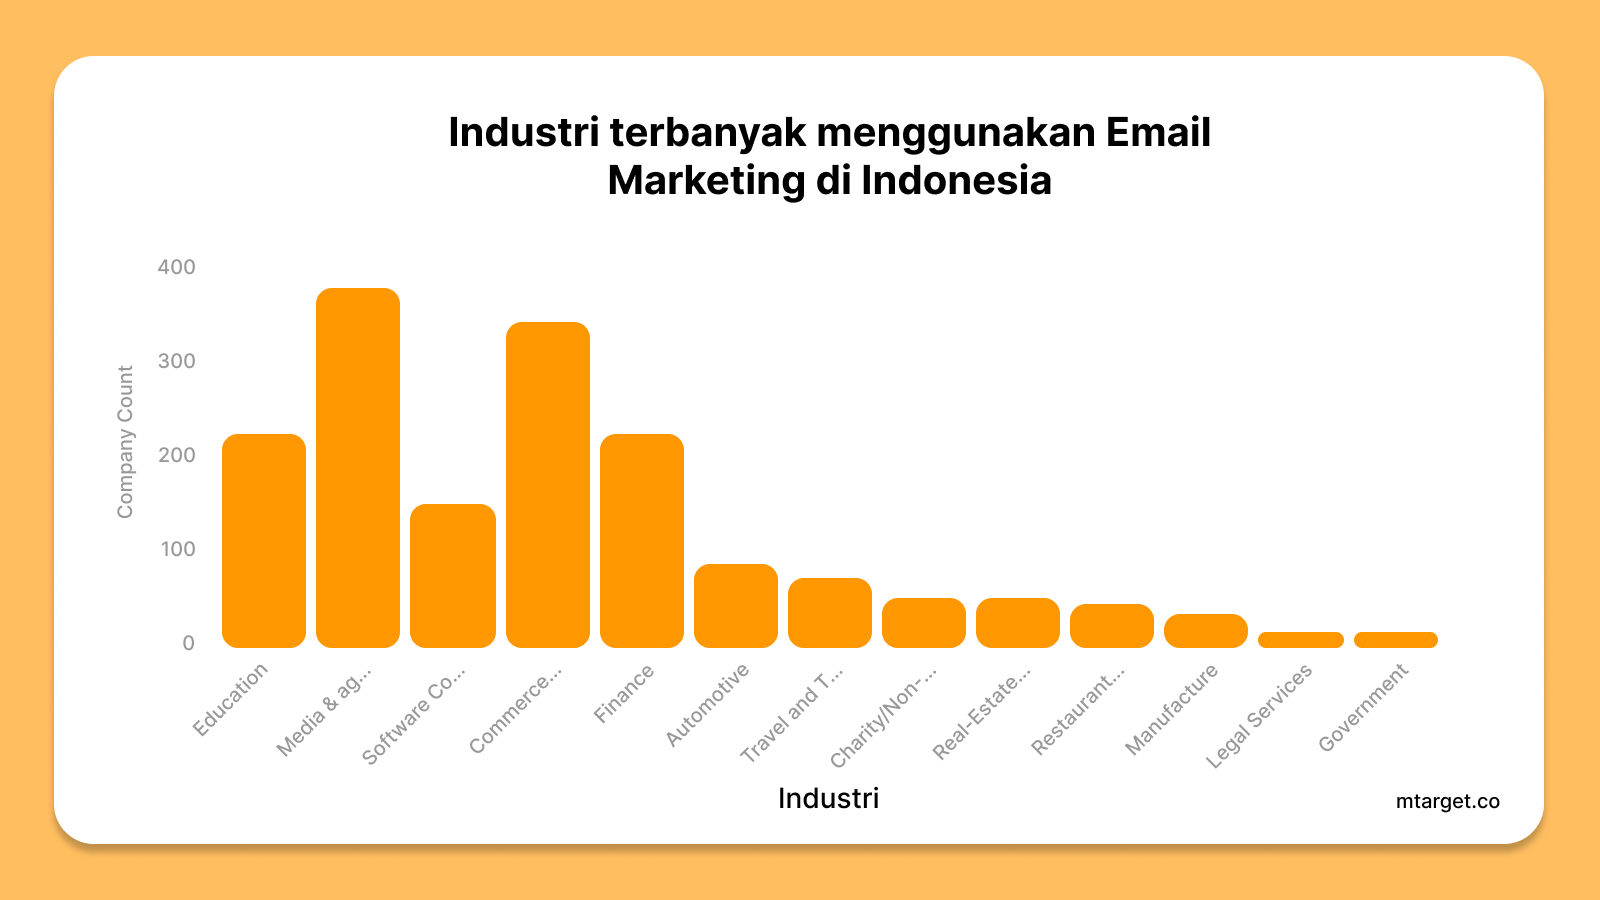 Industri terbanyak dalam menggunakan email marketing di Indonesia